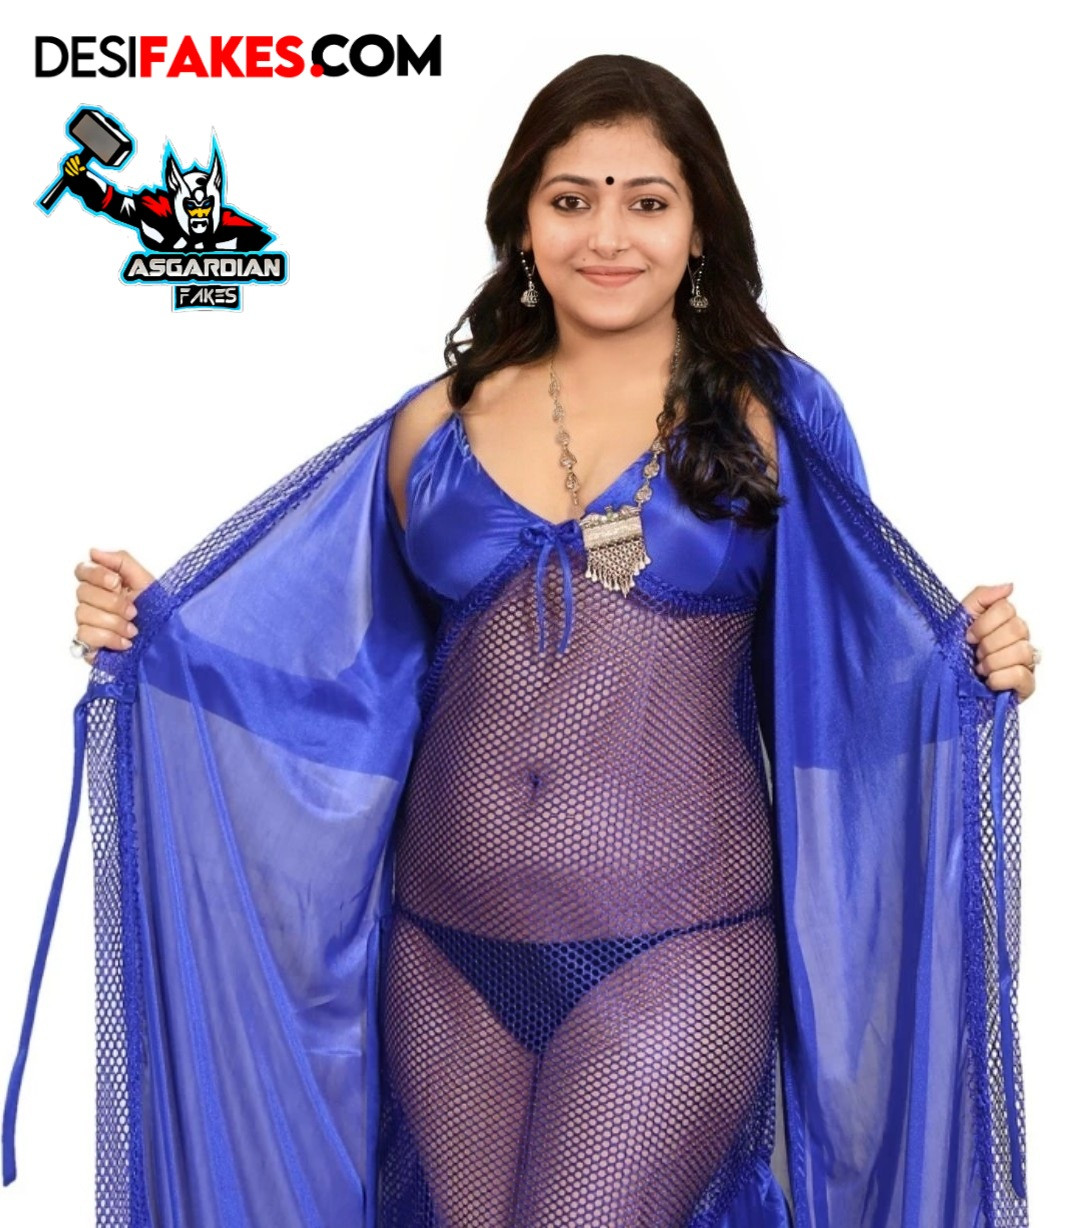 Indian strip tease transparent underwear